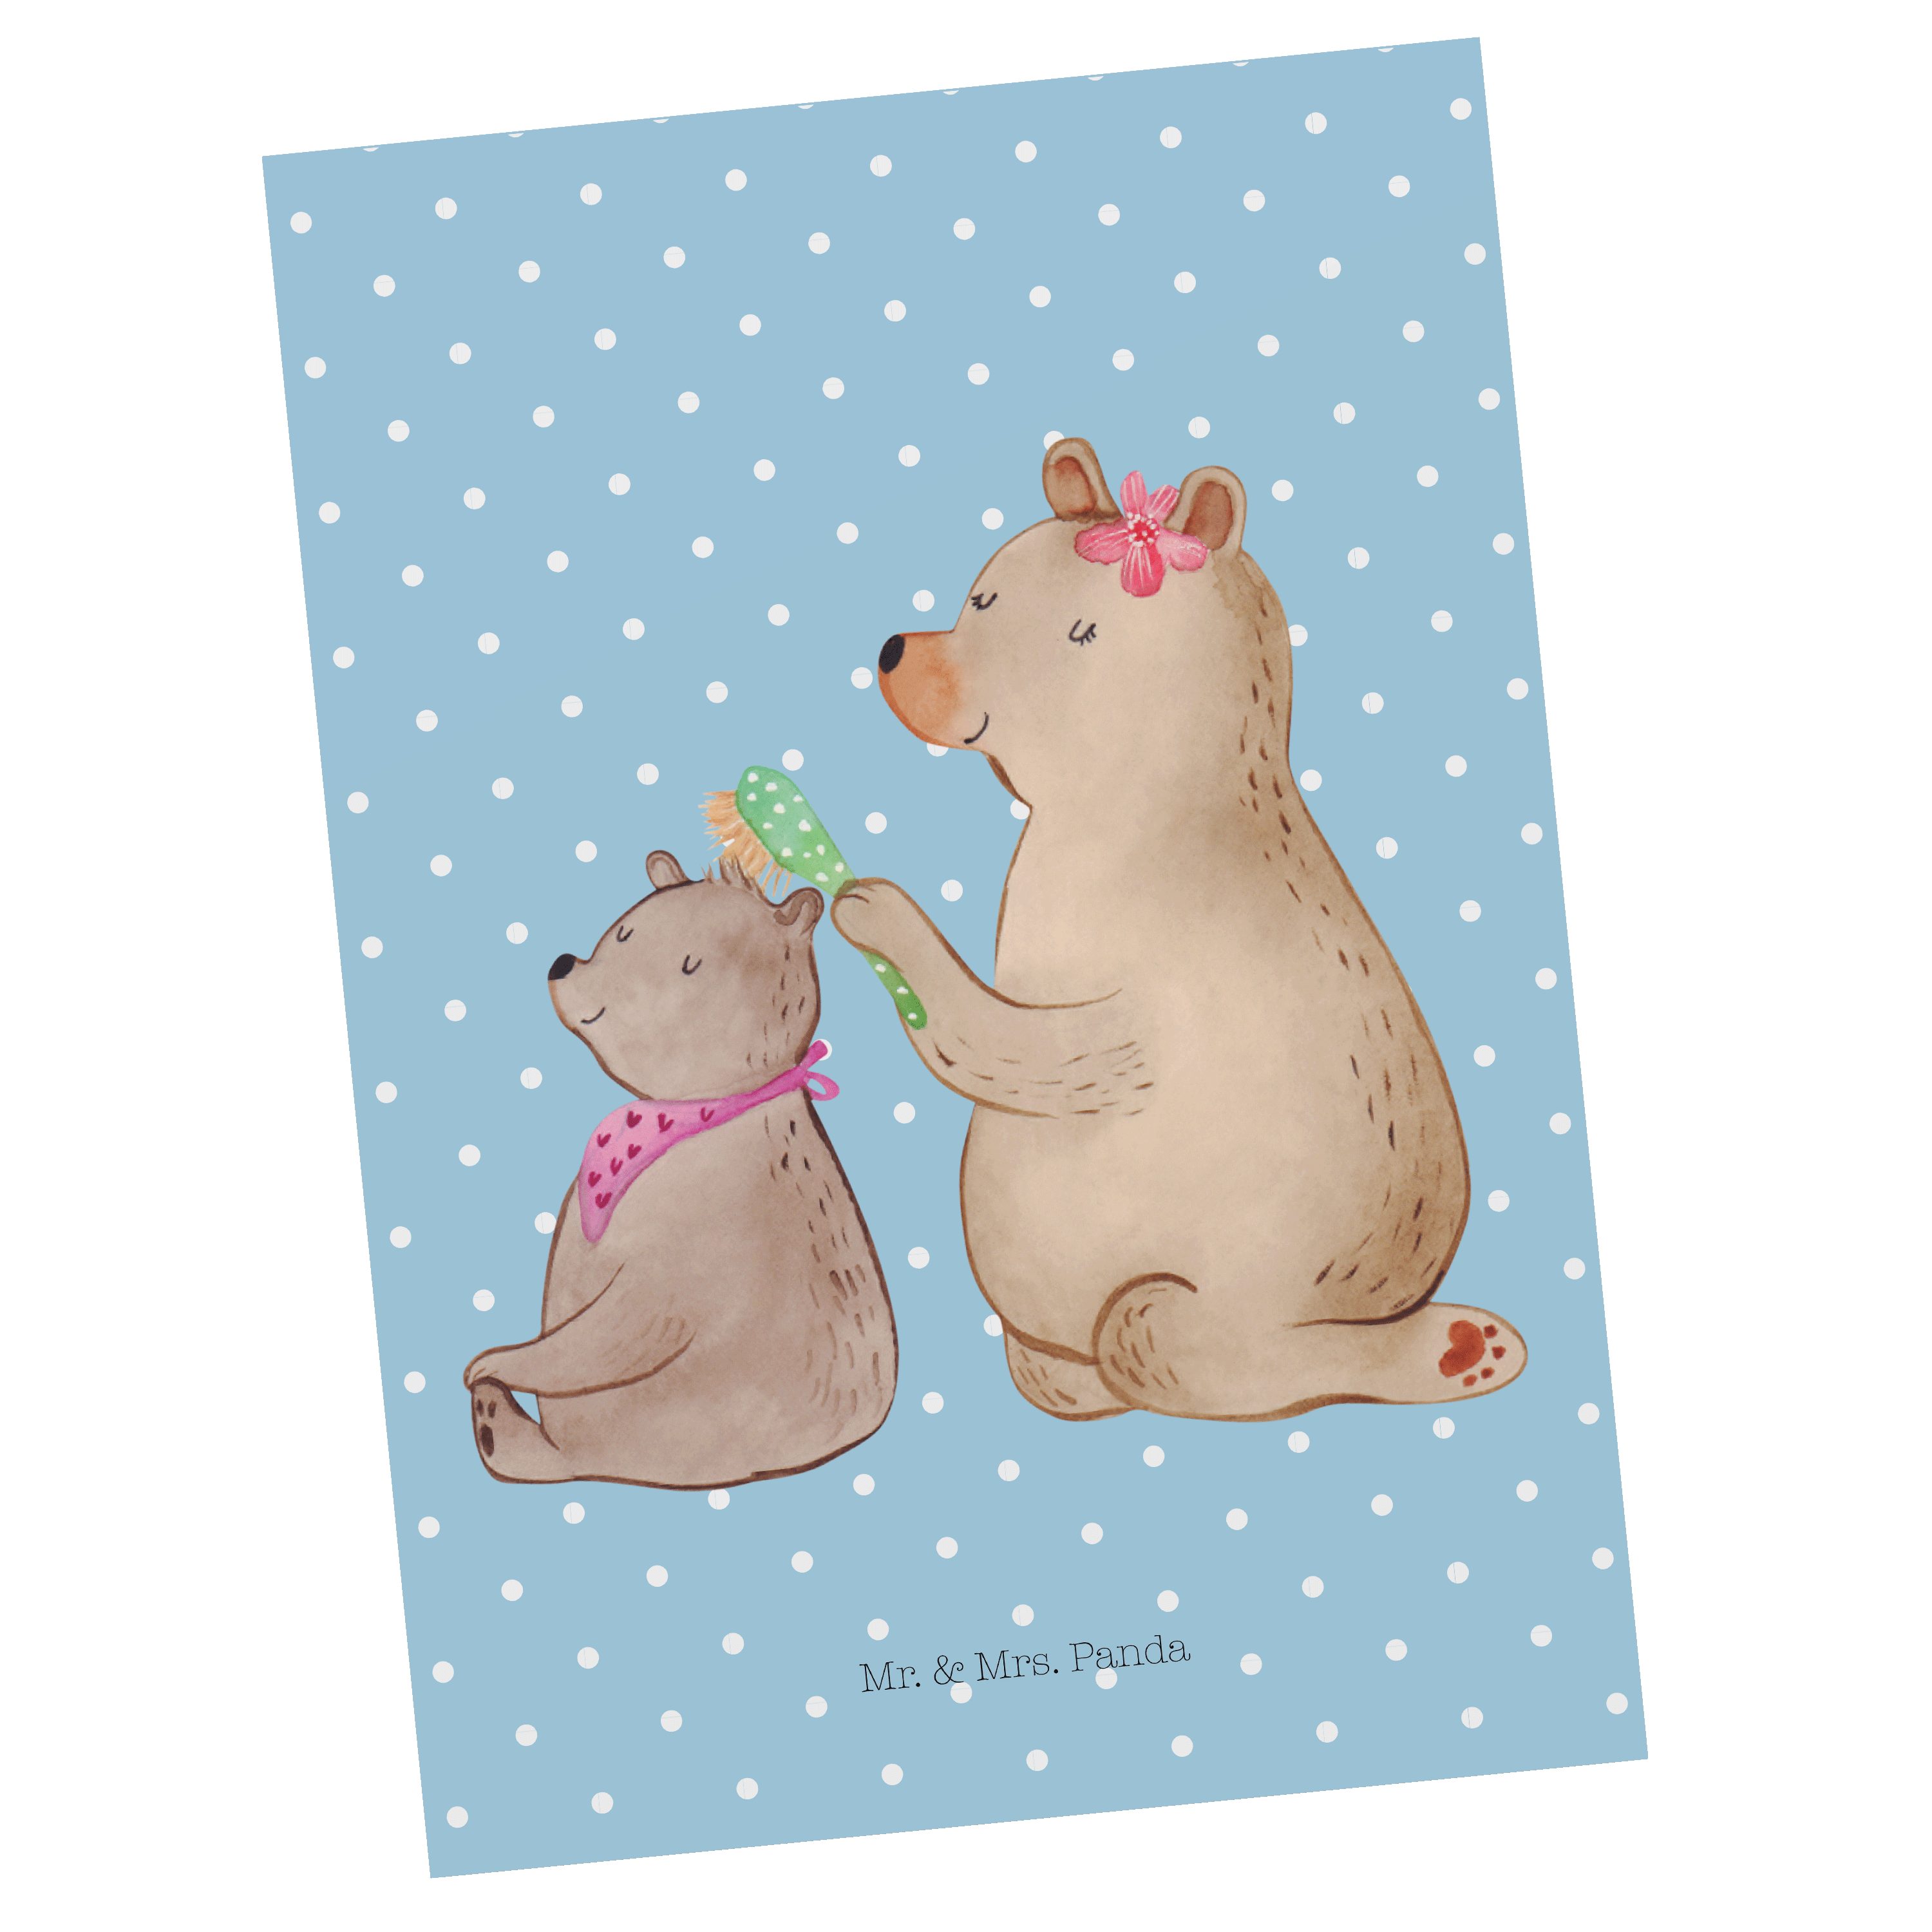 Mr. & Mrs. Panda Postkarte Bär mit Kind - Blau Pastell - Geschenk, Papa, Grußkarte, Bären, Mama